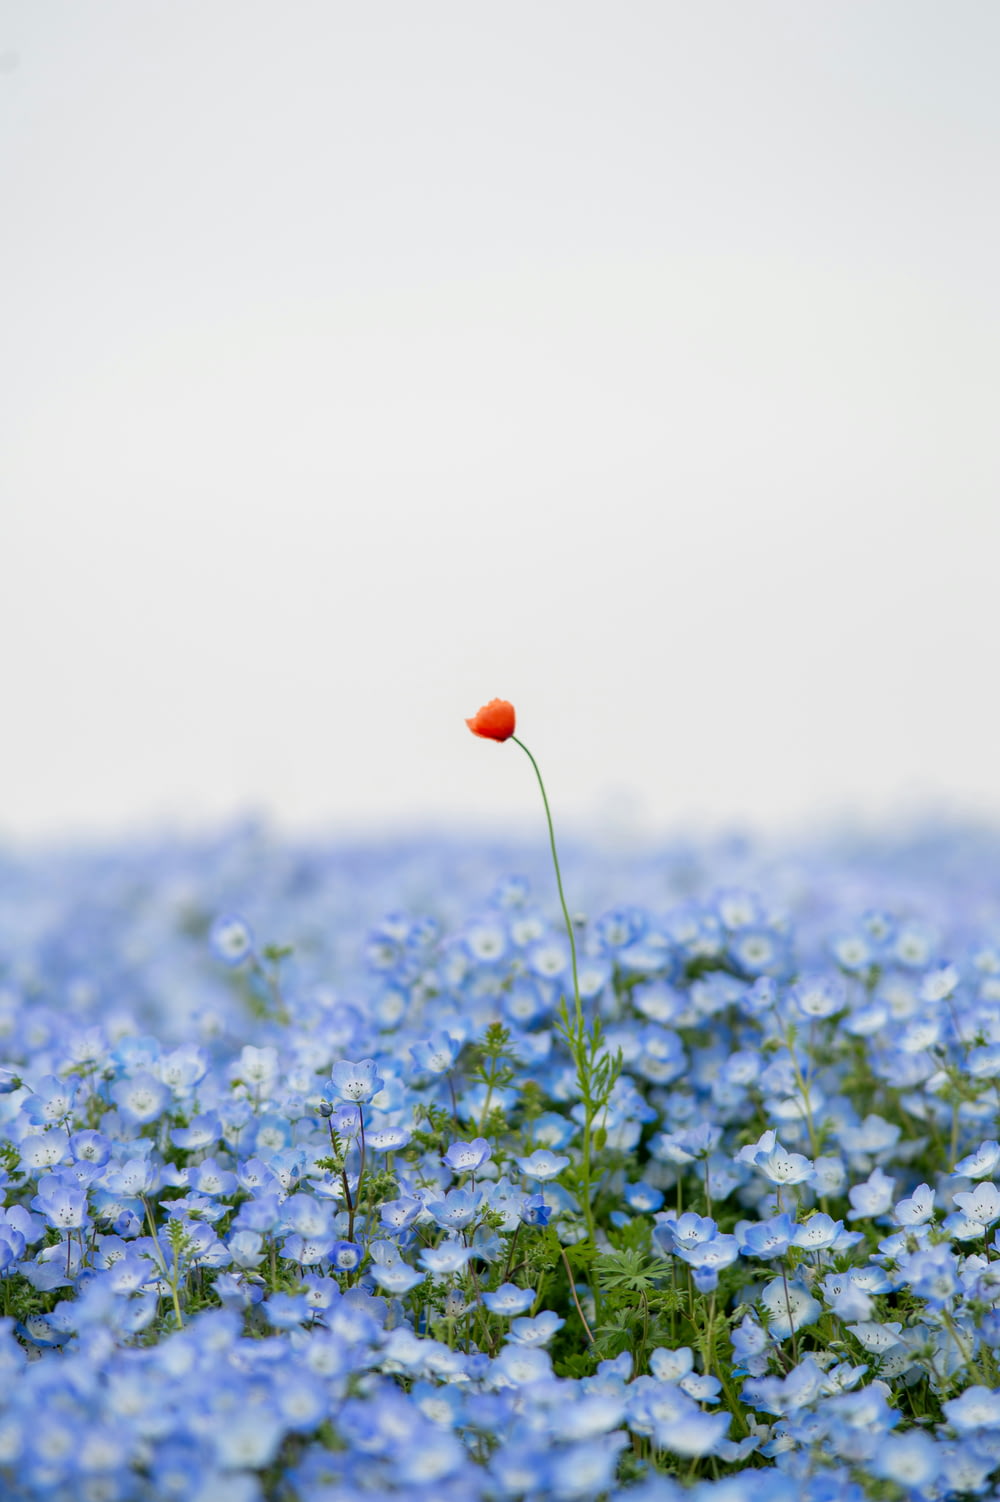 a single red flower in a field of blue flowers